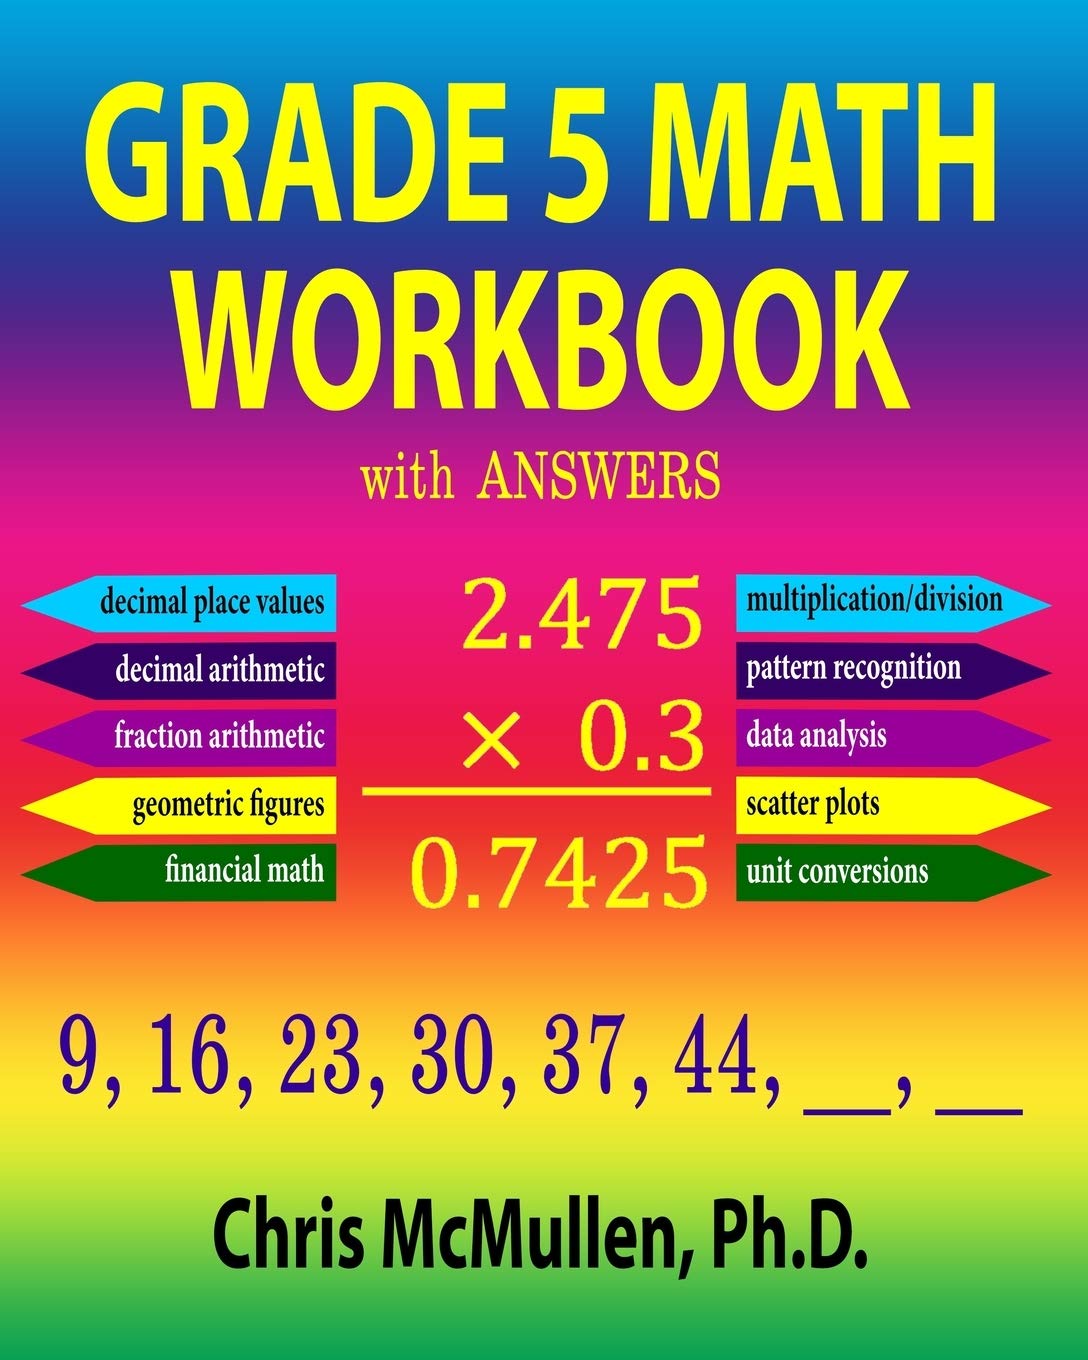 Go Math Grade 5 Workbook Pdf